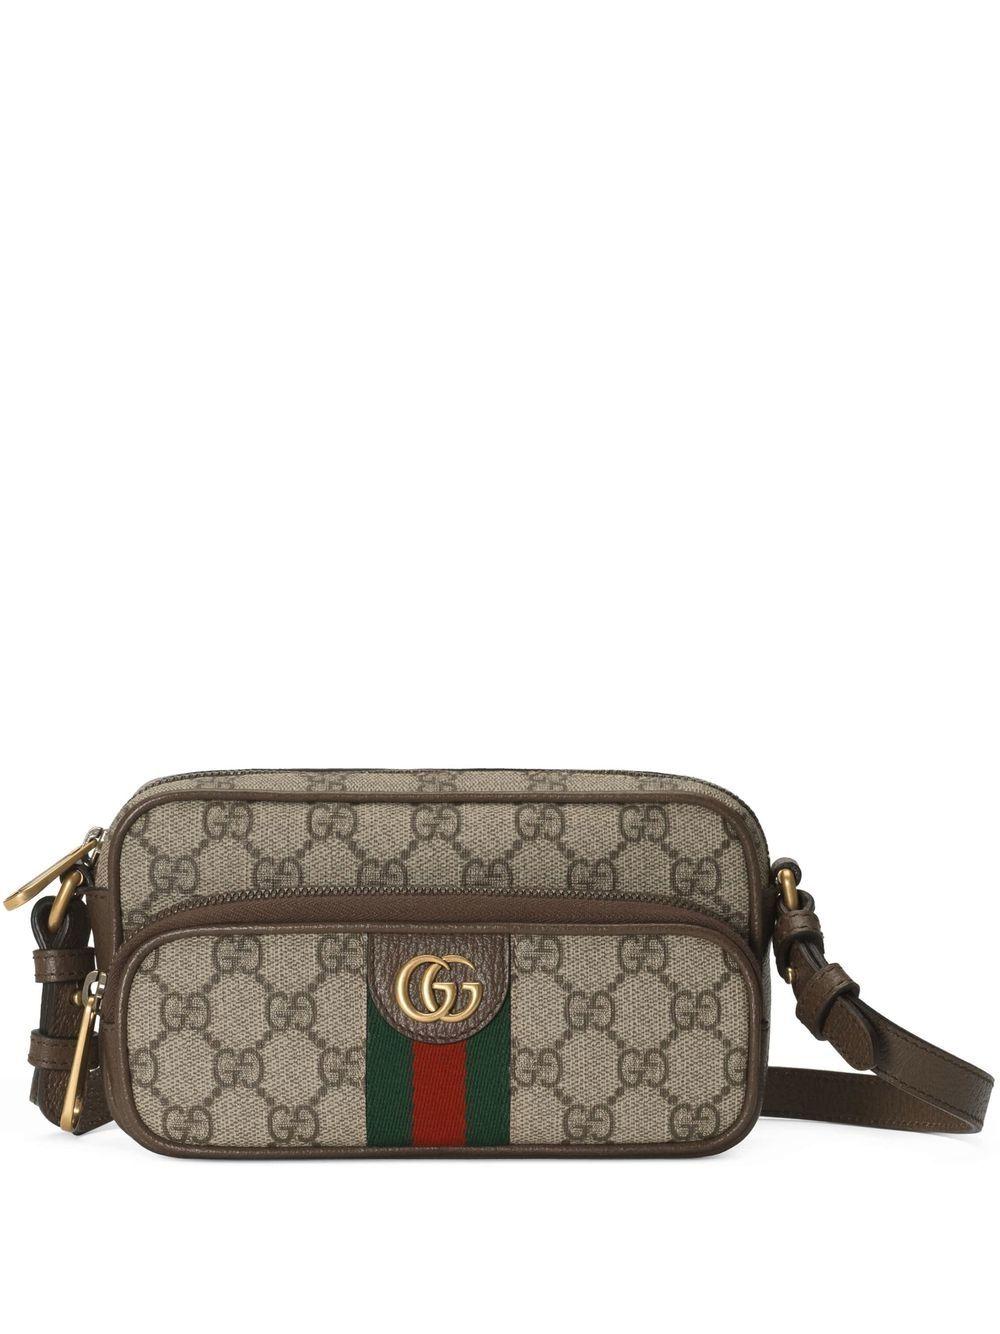 Gucci Ophidia Shoulder Bag GG Supreme Grey/Black